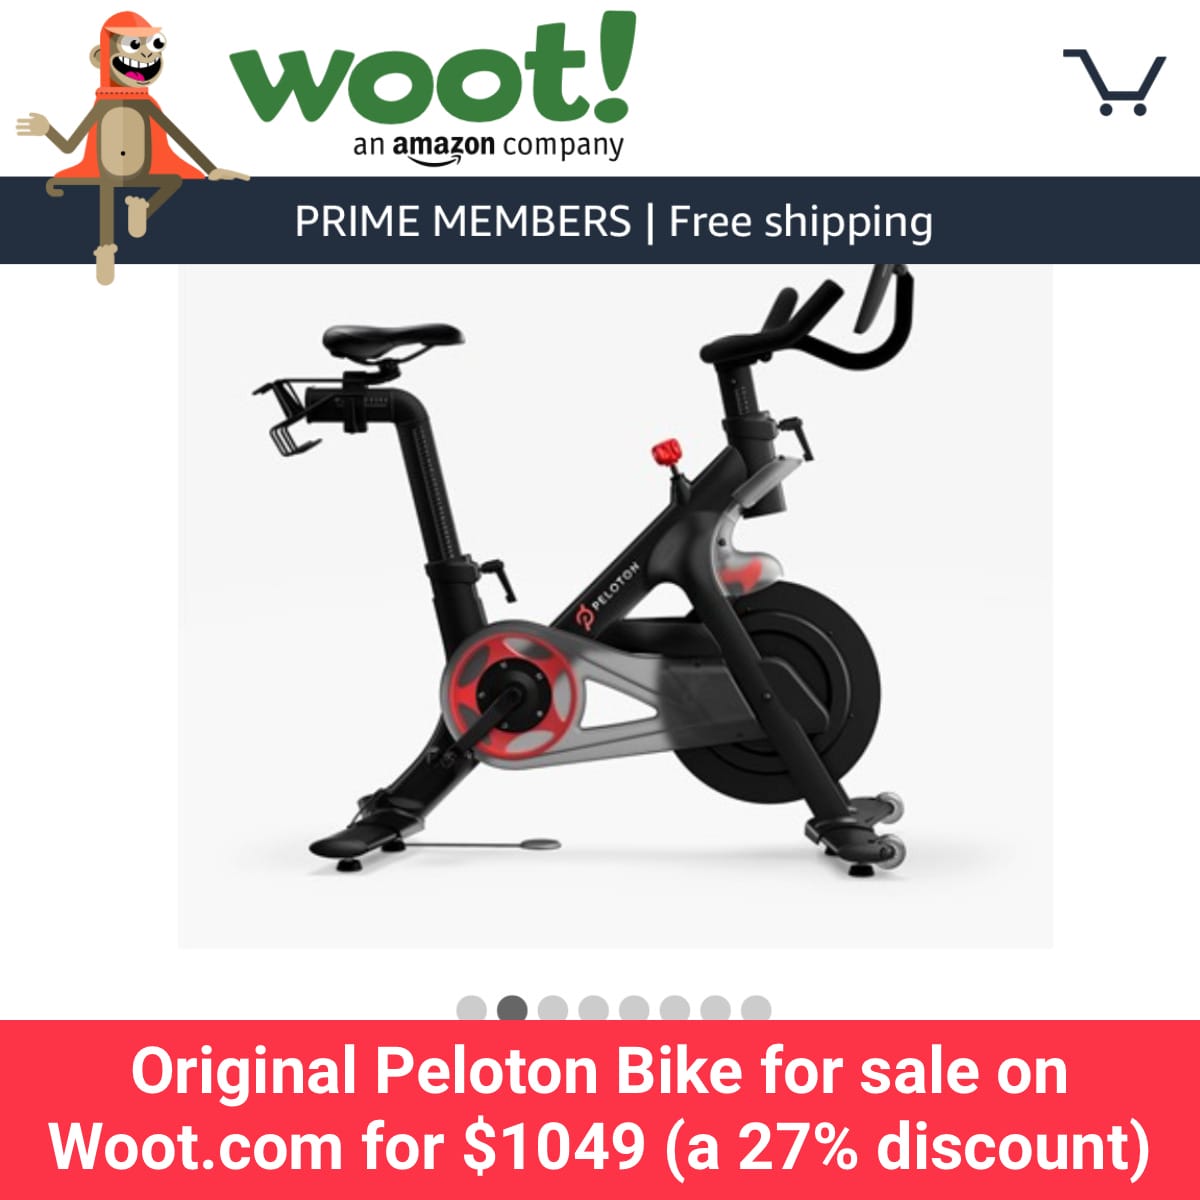 Original Peloton Bike for sale on Woot.com for $1049 (a 27